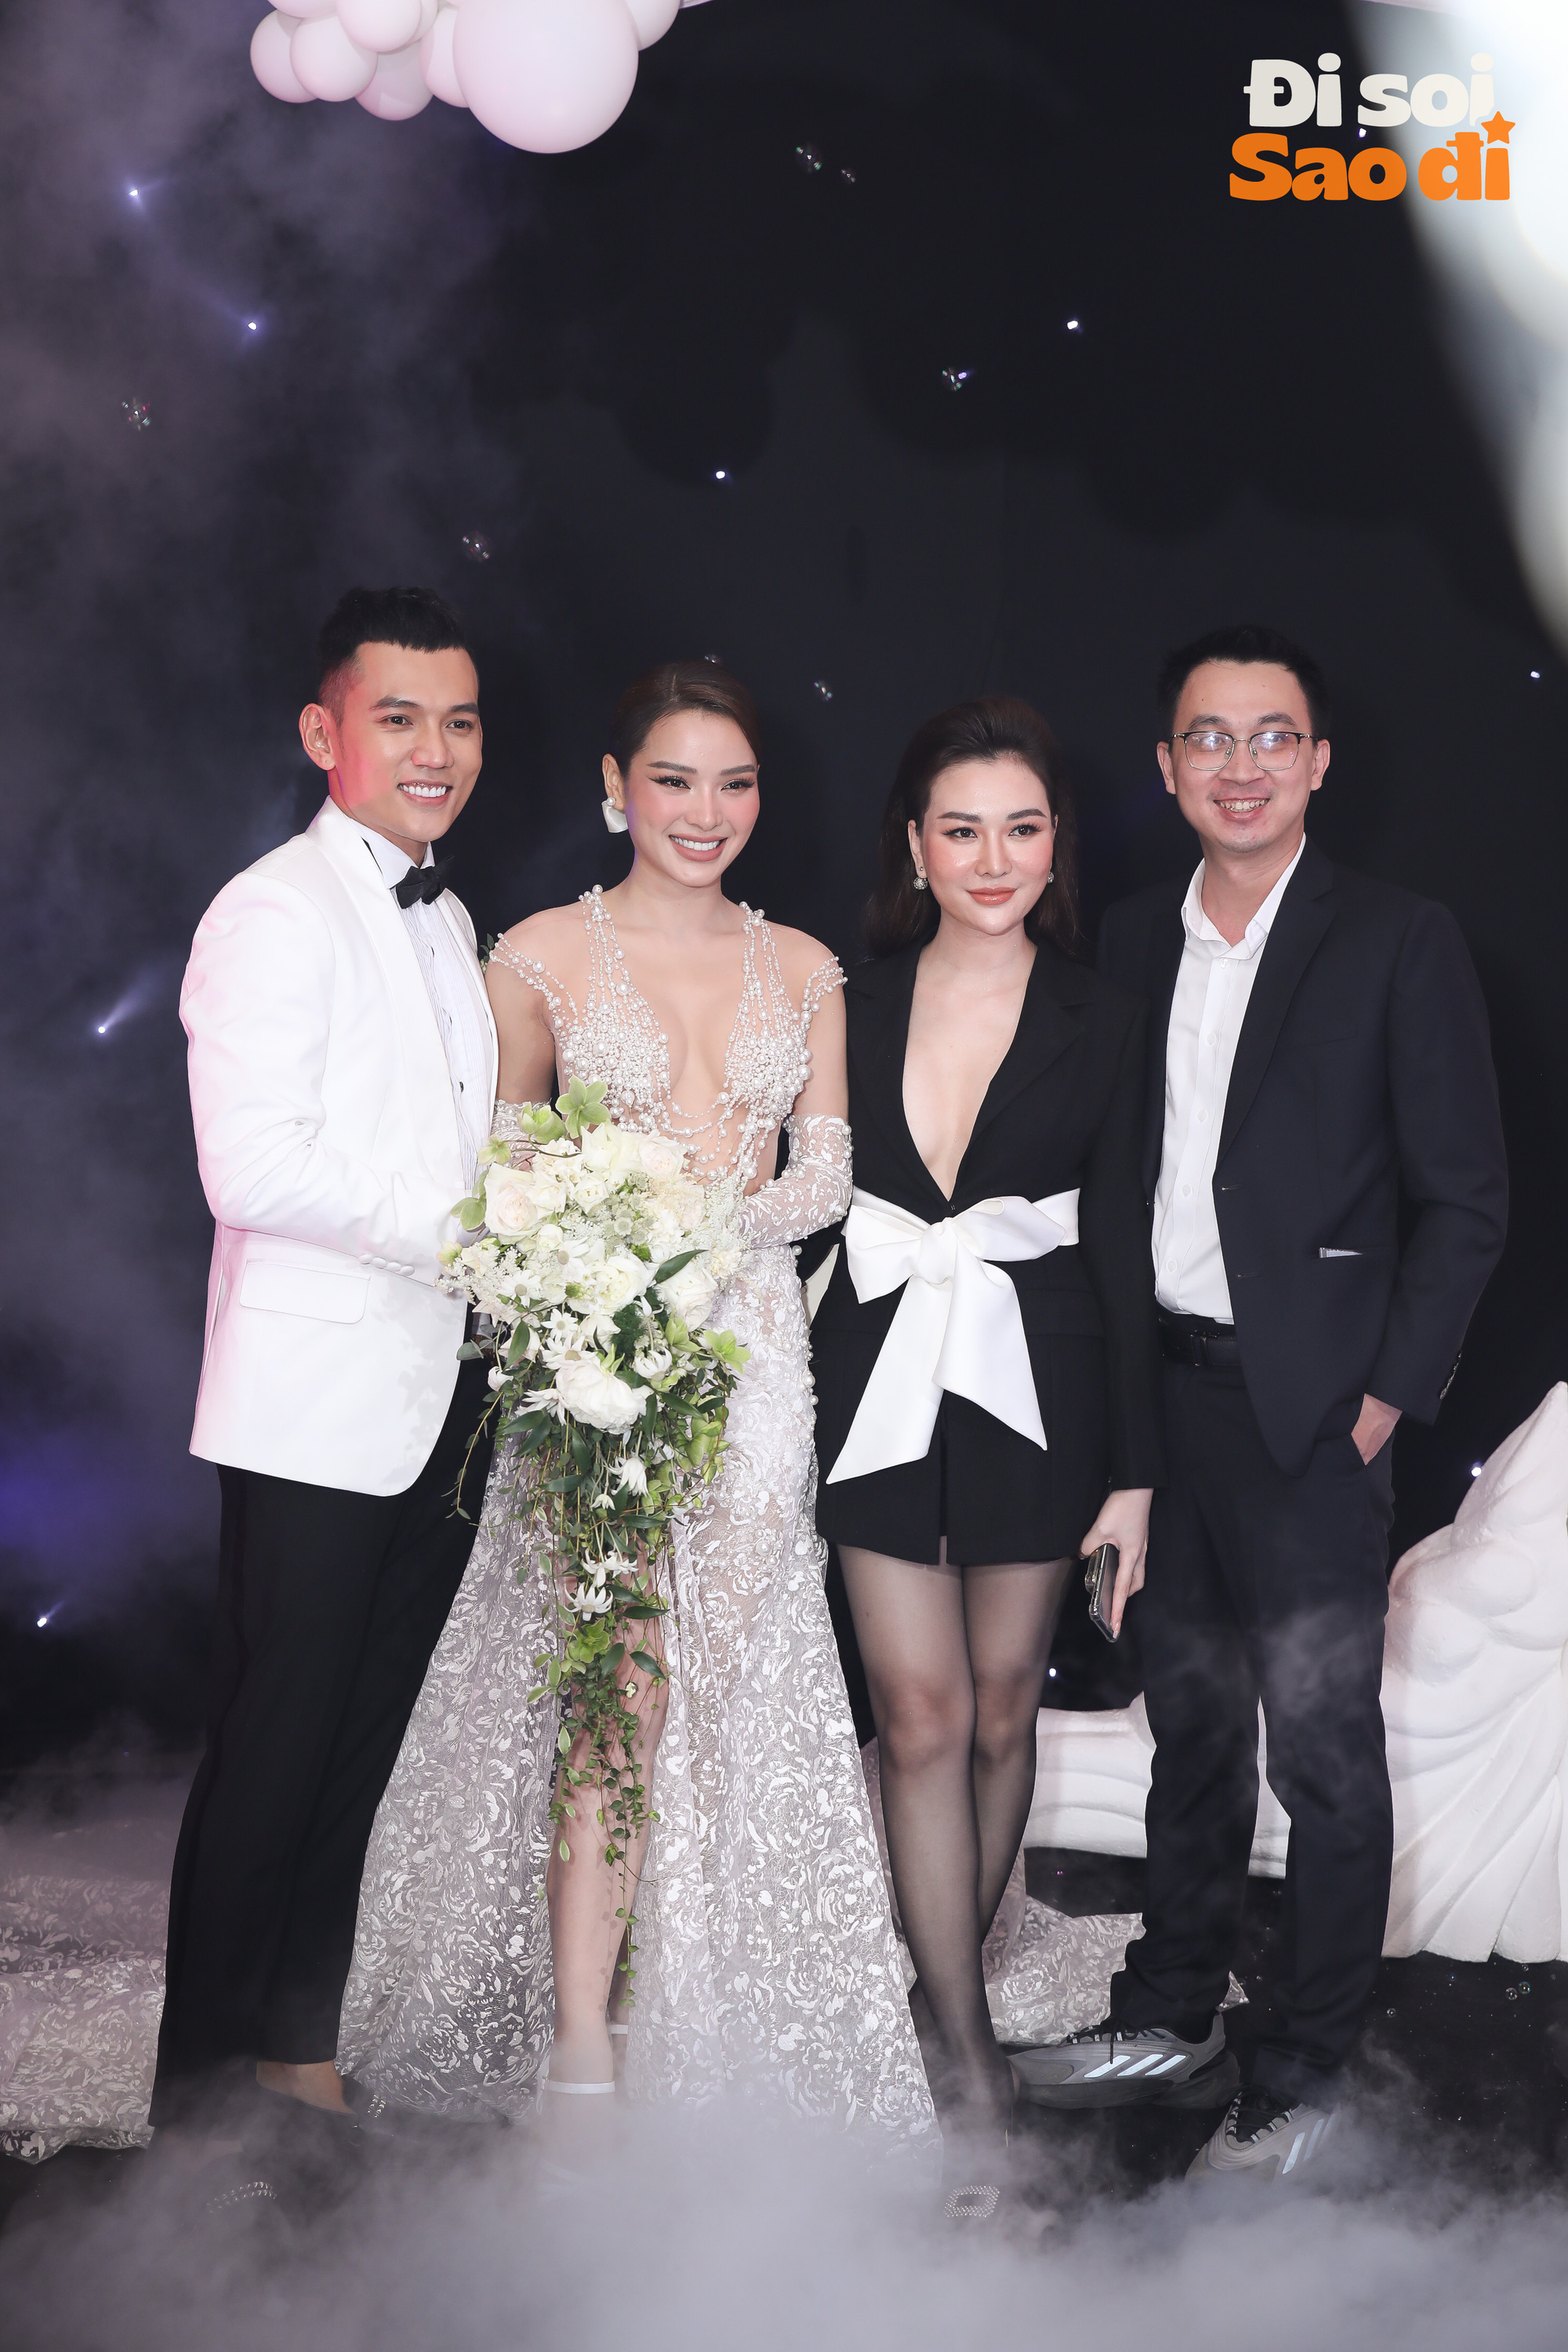 Lâu lắm rồi Vbiz mới rộn ràng đi ăn cưới: Cao Thái Hà, Hải Băng nền nã, hội mỹ nhân đọ sắc trong hôn lễ Phương Trinh Jolie và Lý Bình - Ảnh 4.